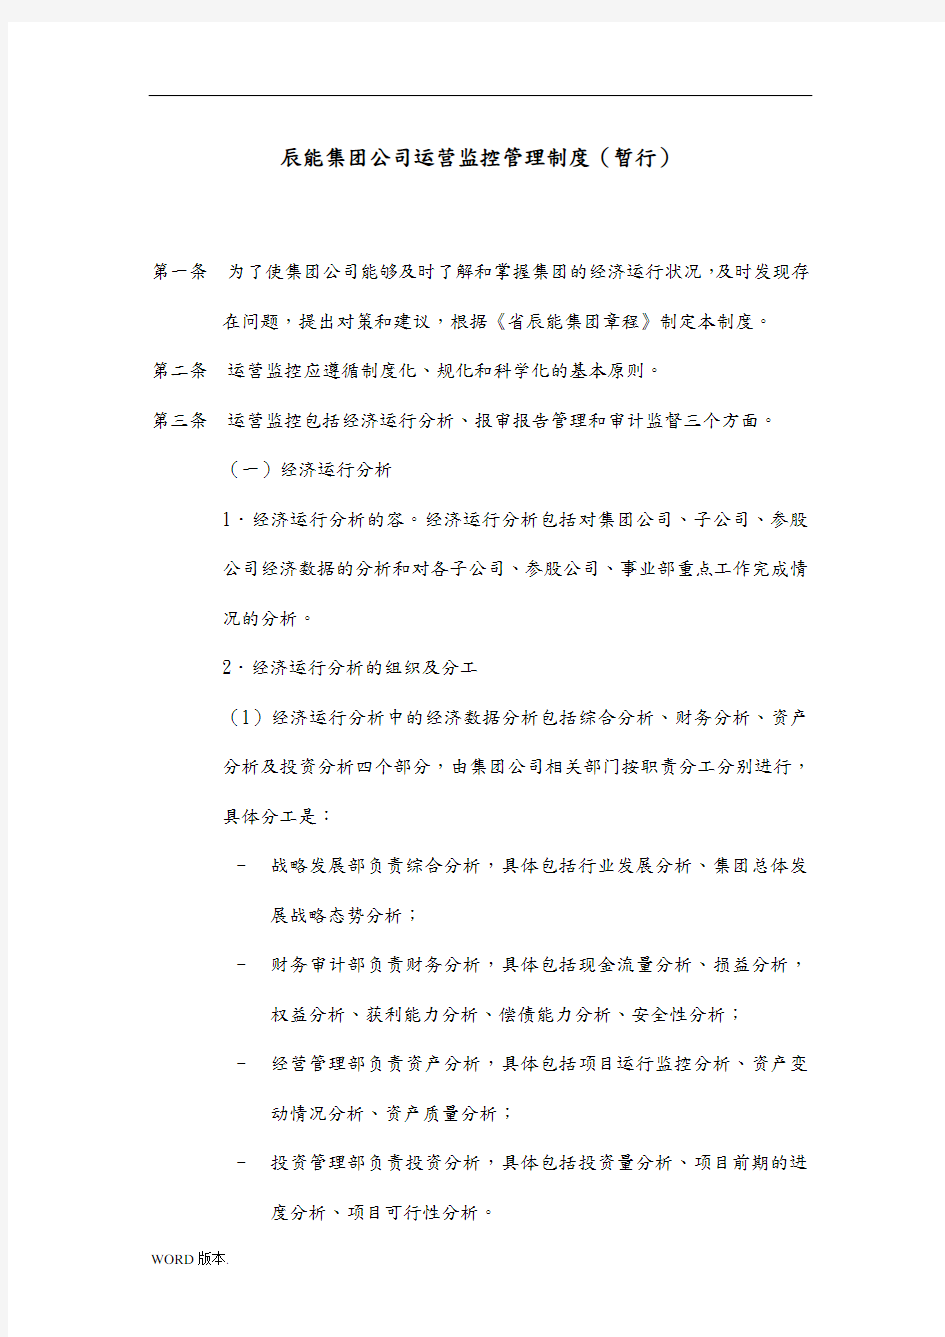 5黑龙江辰能集团公司运营监控管理制度修改